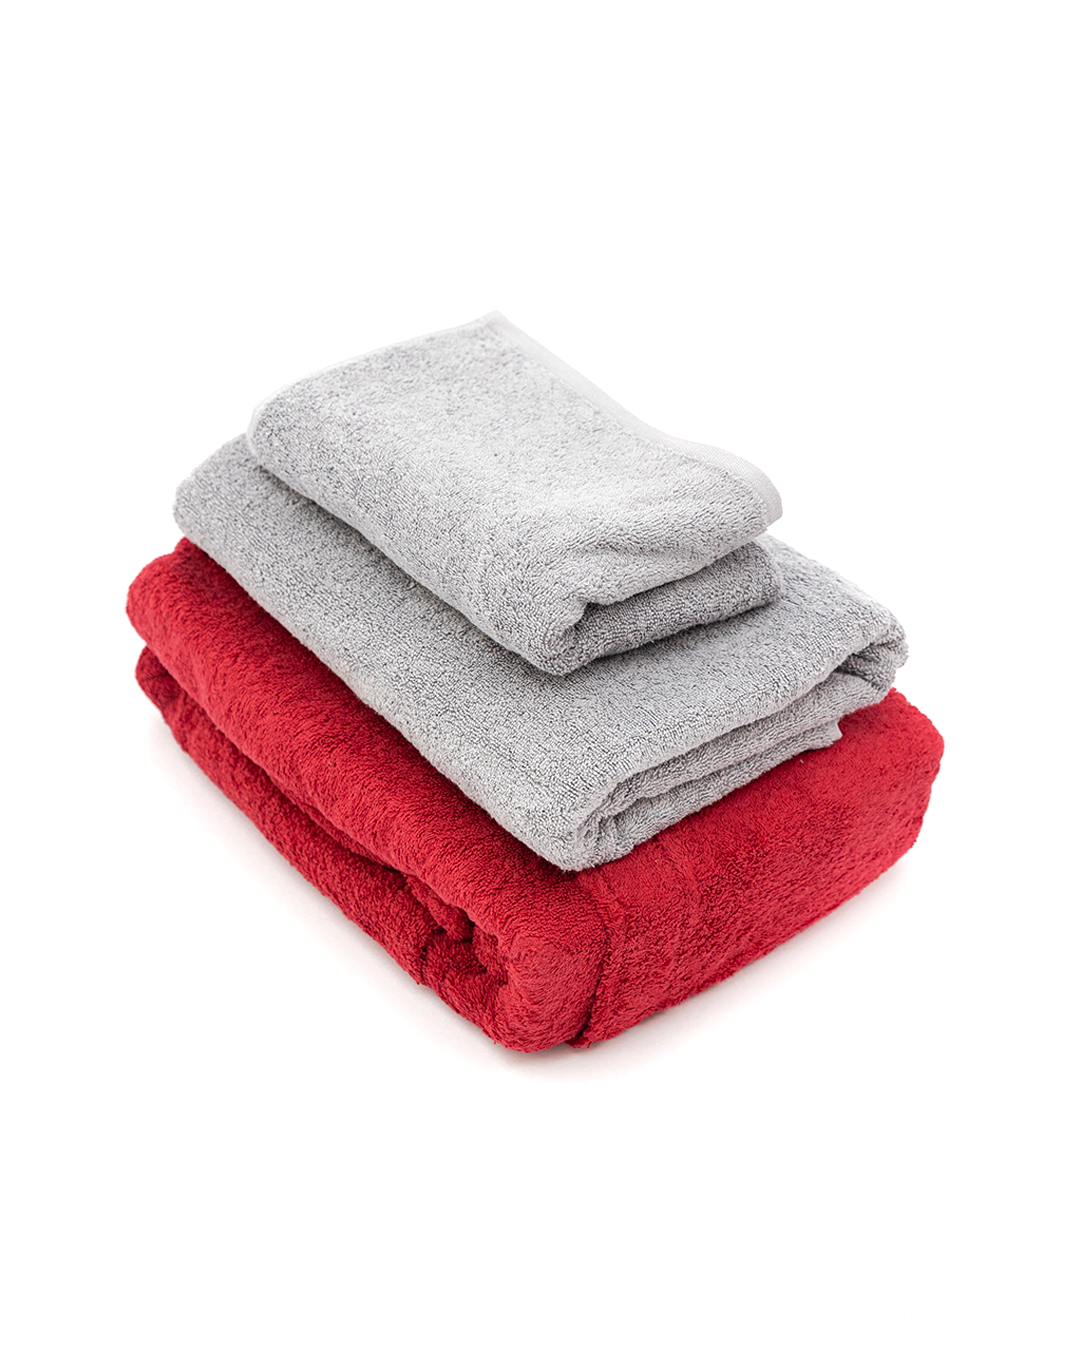 2 Towels + Bathrobe (L)